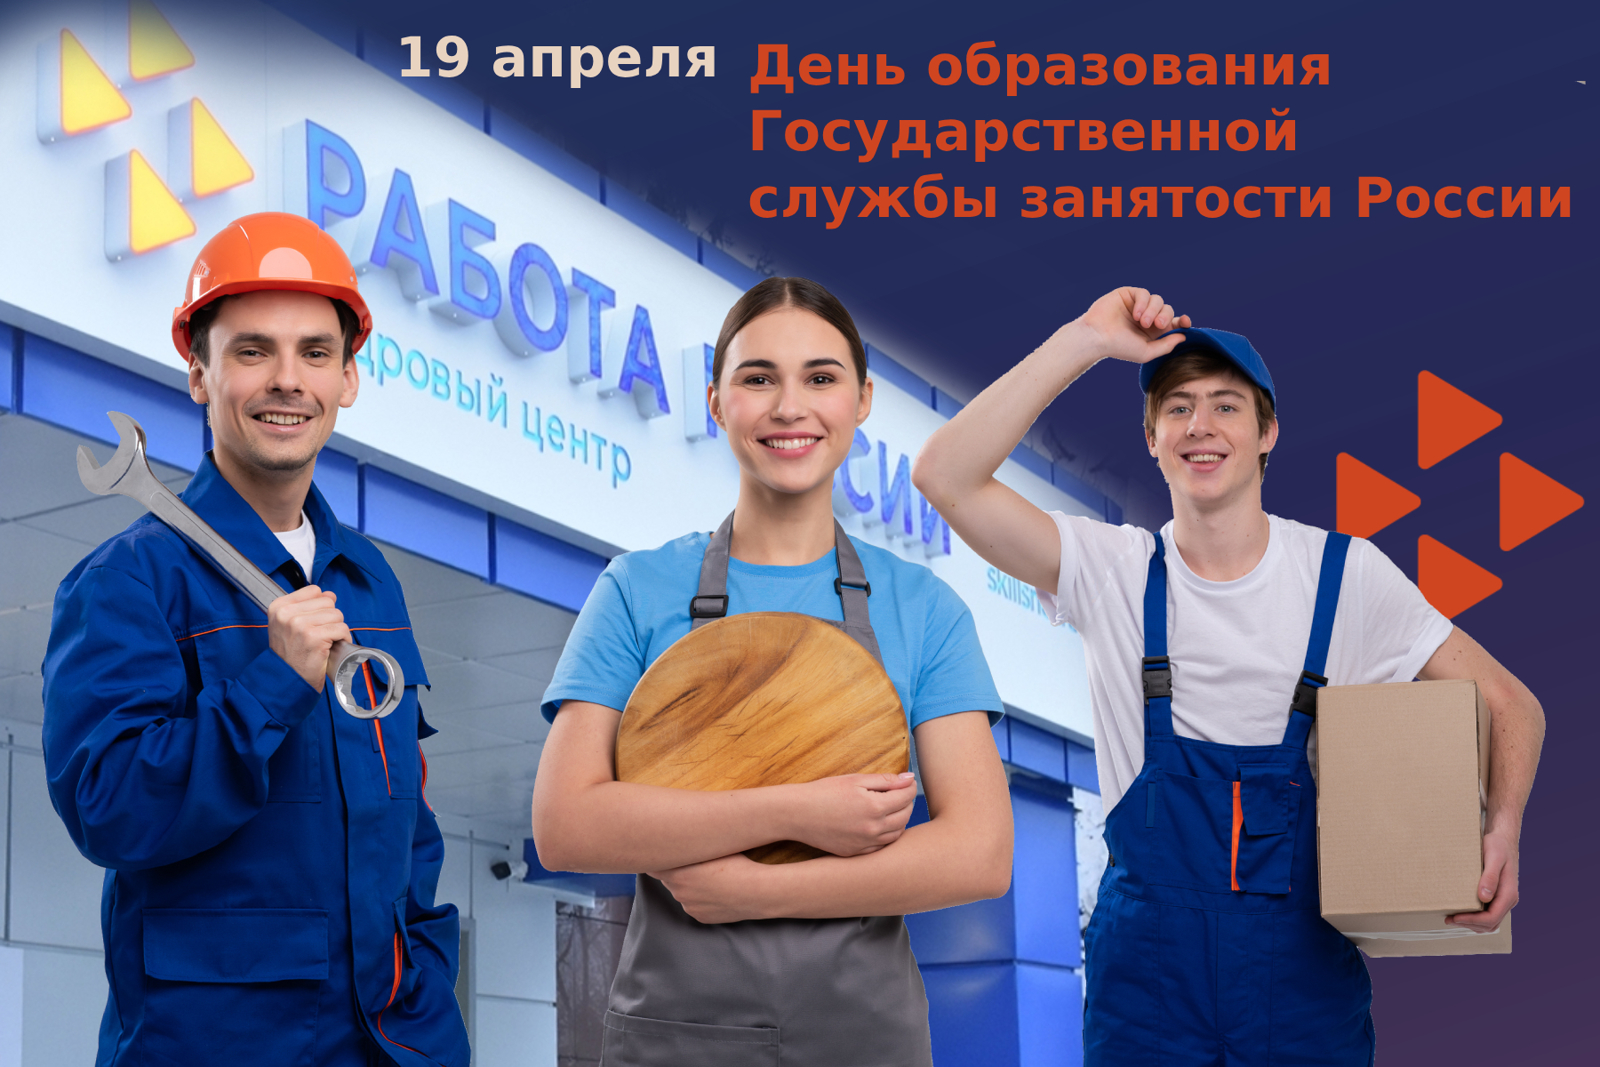 Олег Николаев поздравляет с Днем образования государственной службы занятости